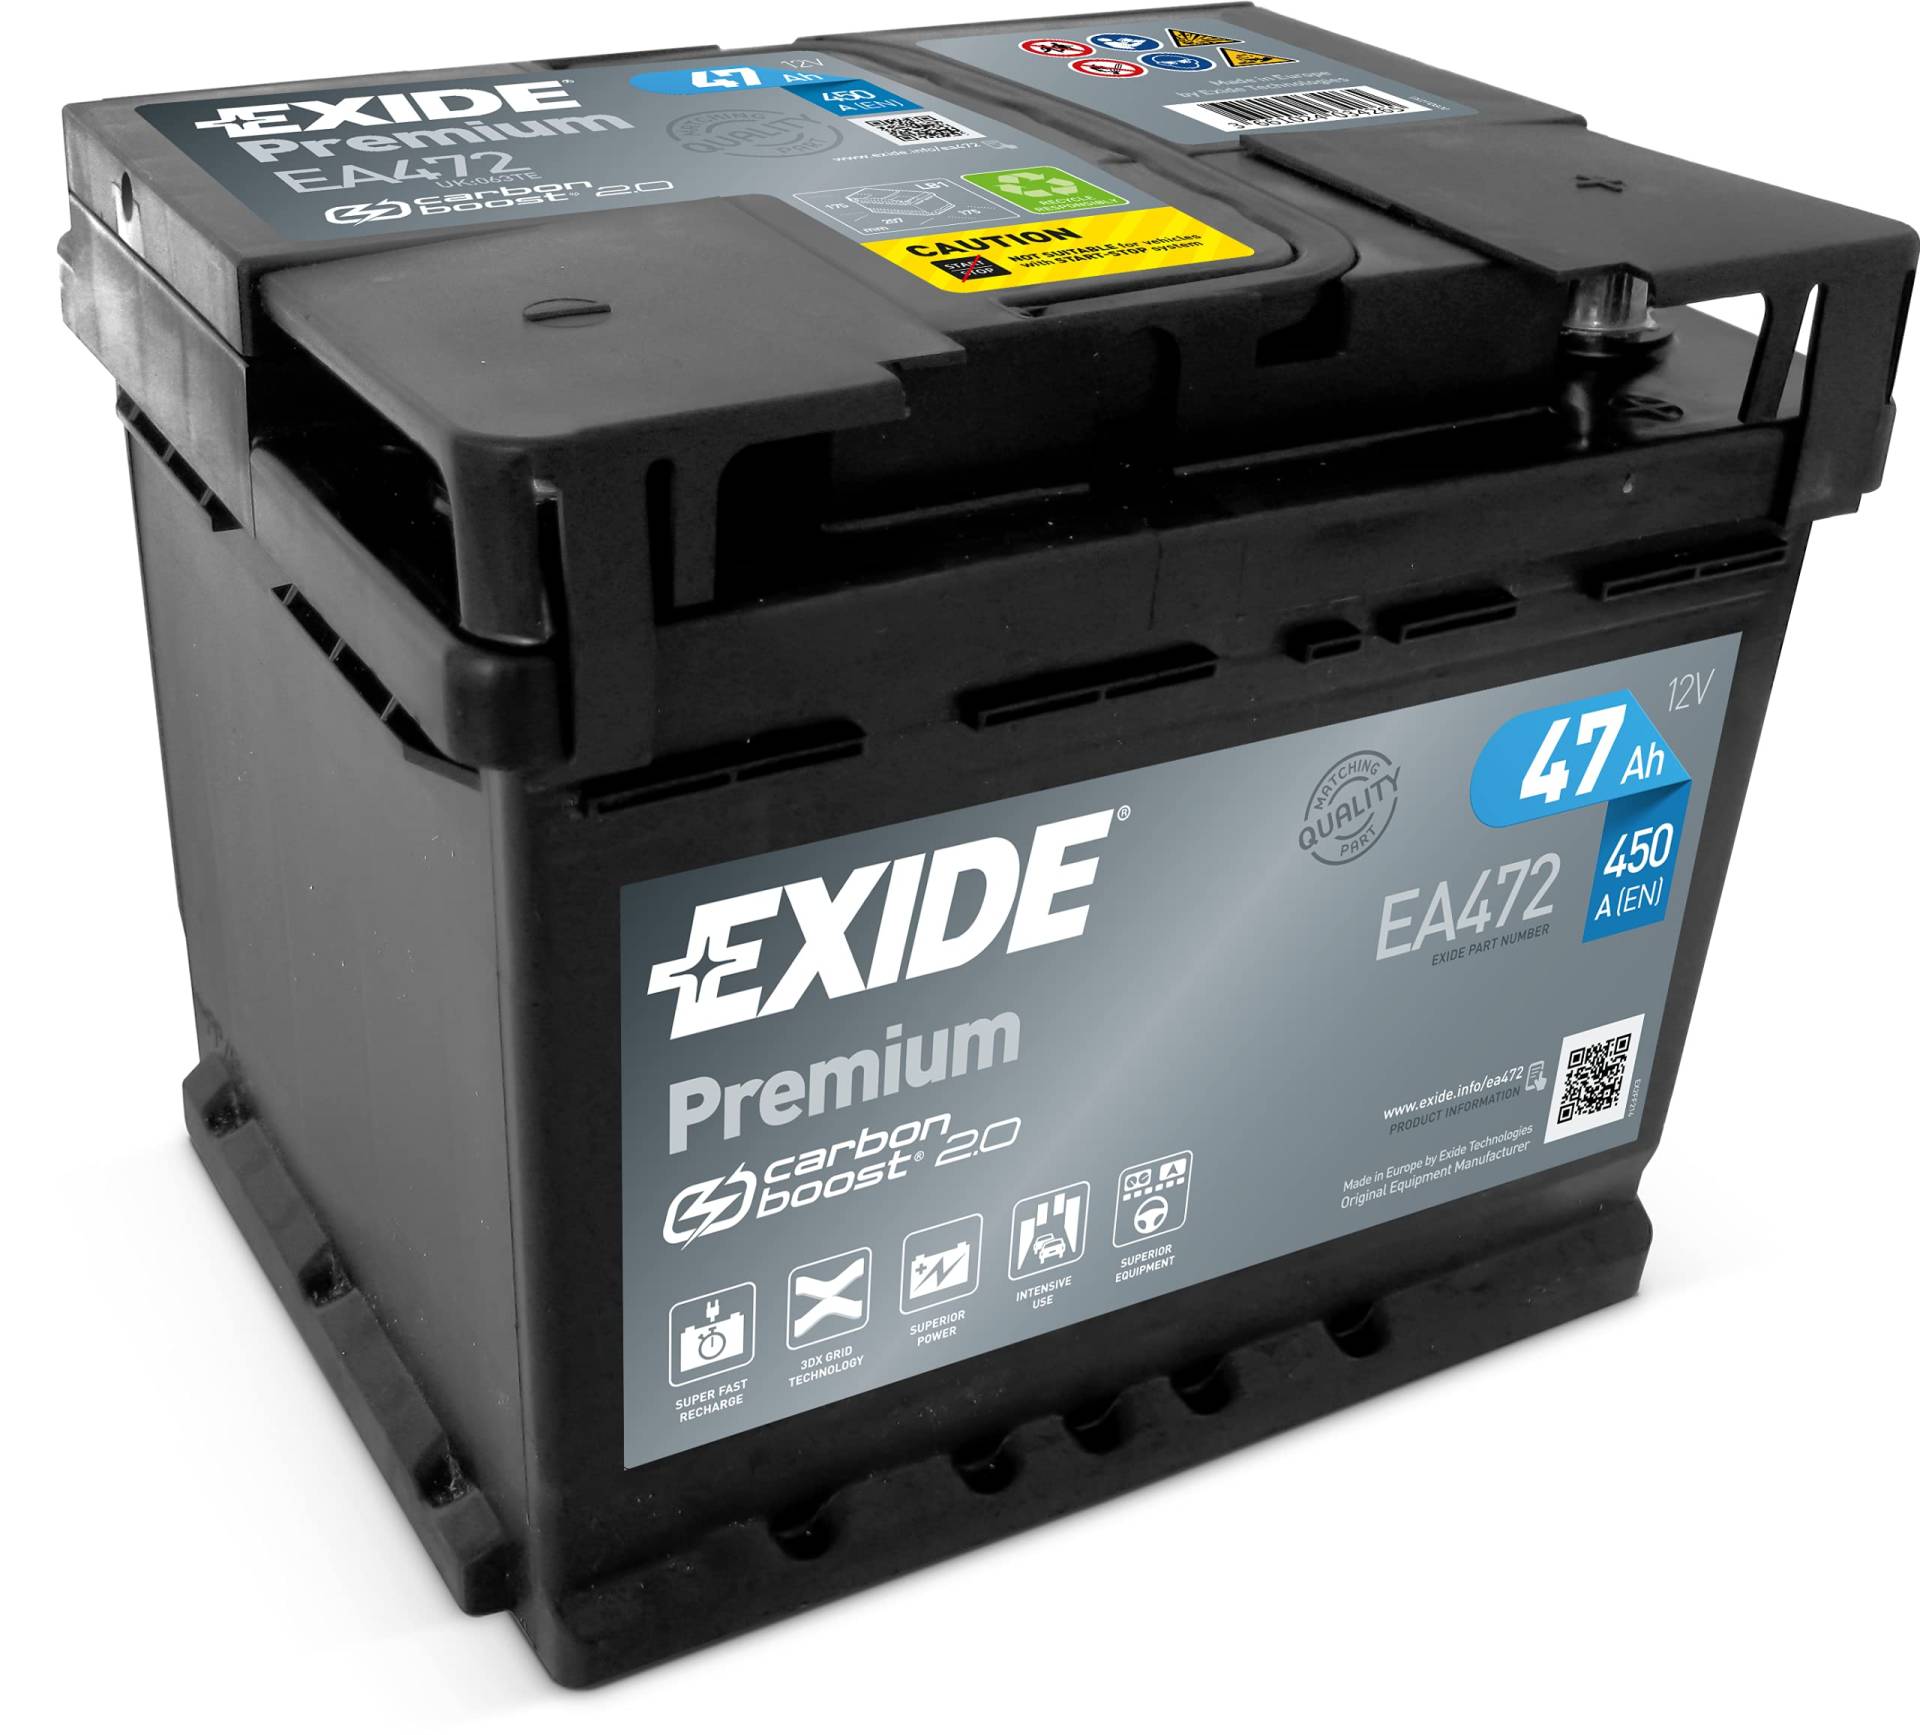 Exide EA472 Premium Carbon Boost Autobatterie 12V 47Ah 450A von Exide